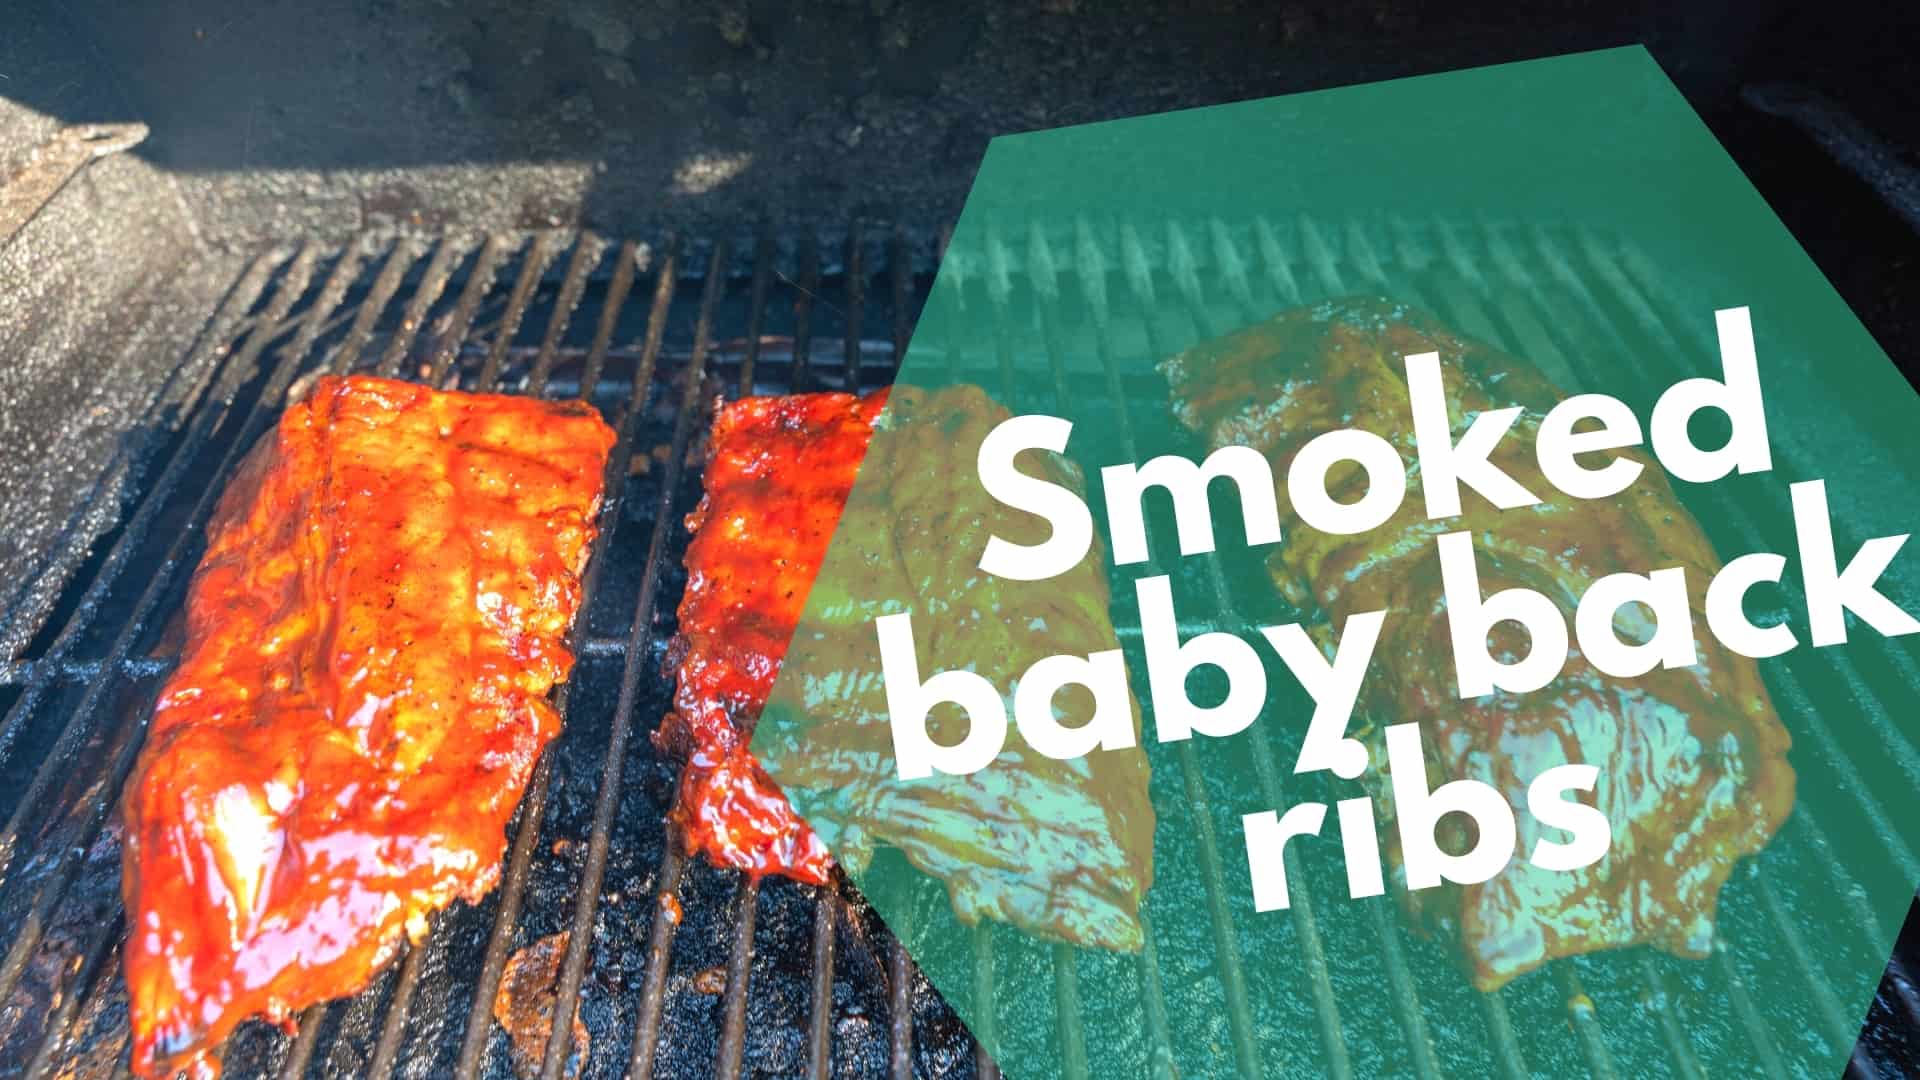 Smoked baby back ribs